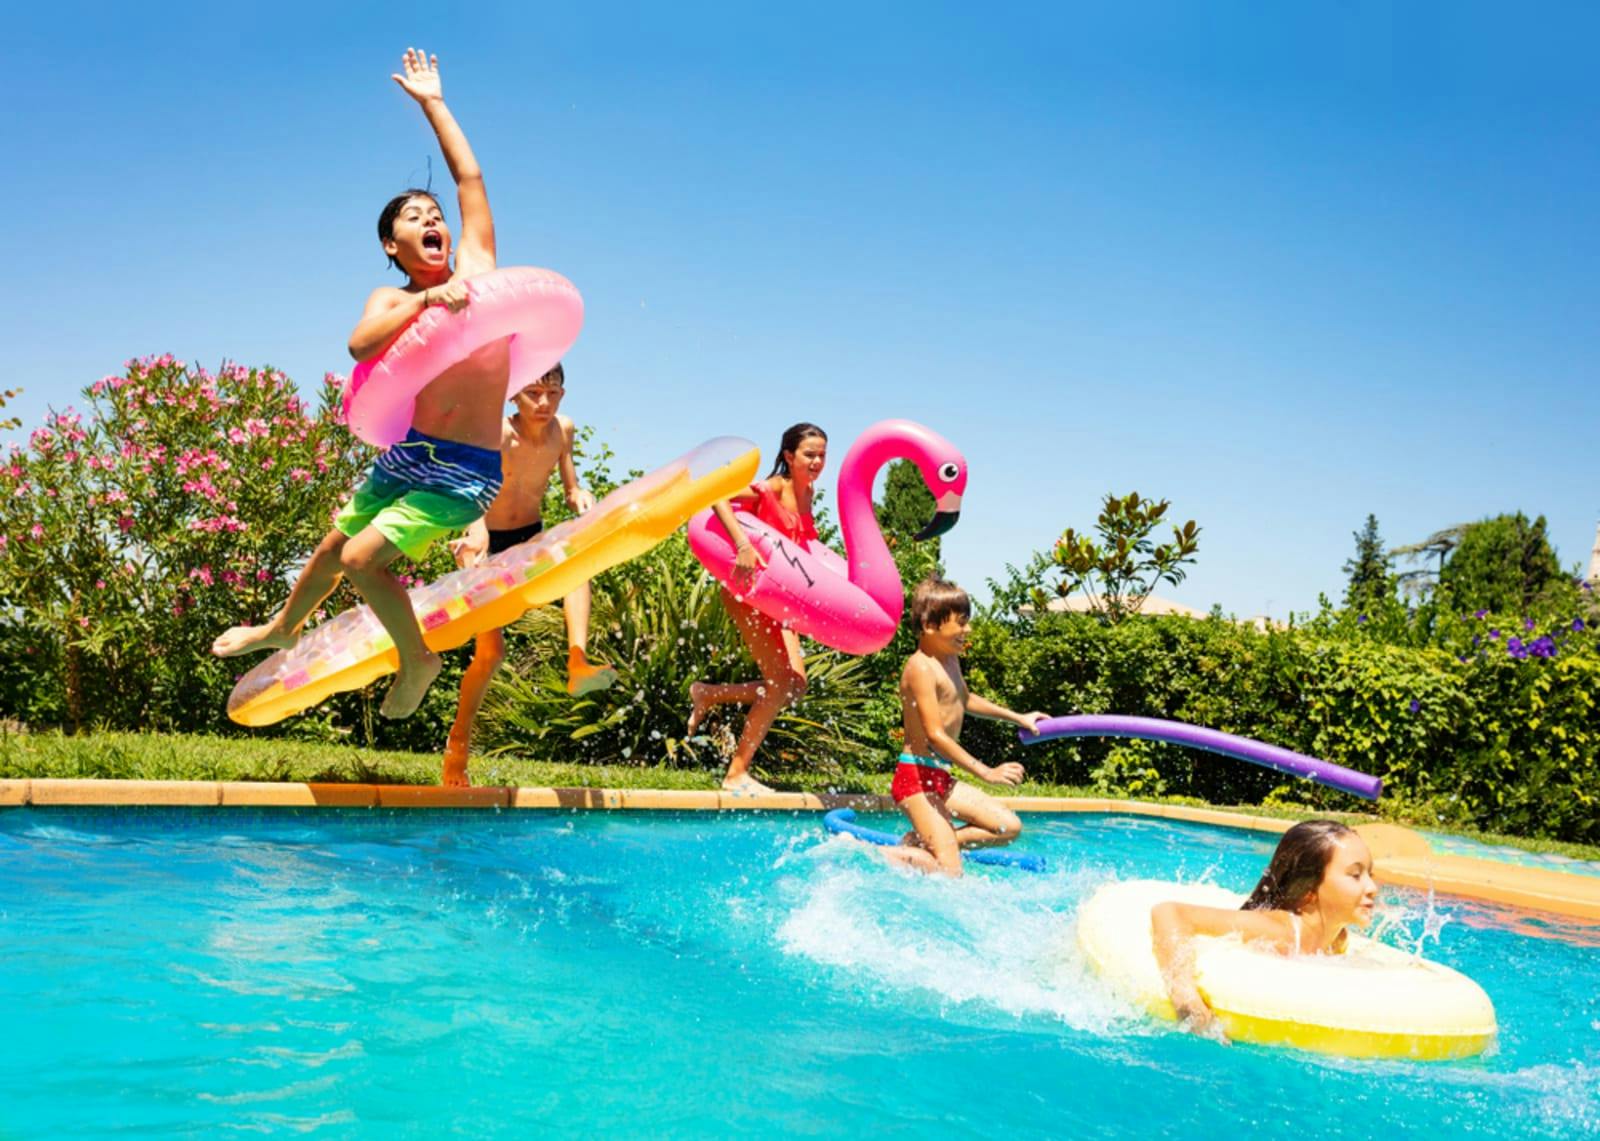 Grazen Installatie Aanbeveling Relaxt op vakantie met kinderen? 5 tips! | Jij kiest. FBTO